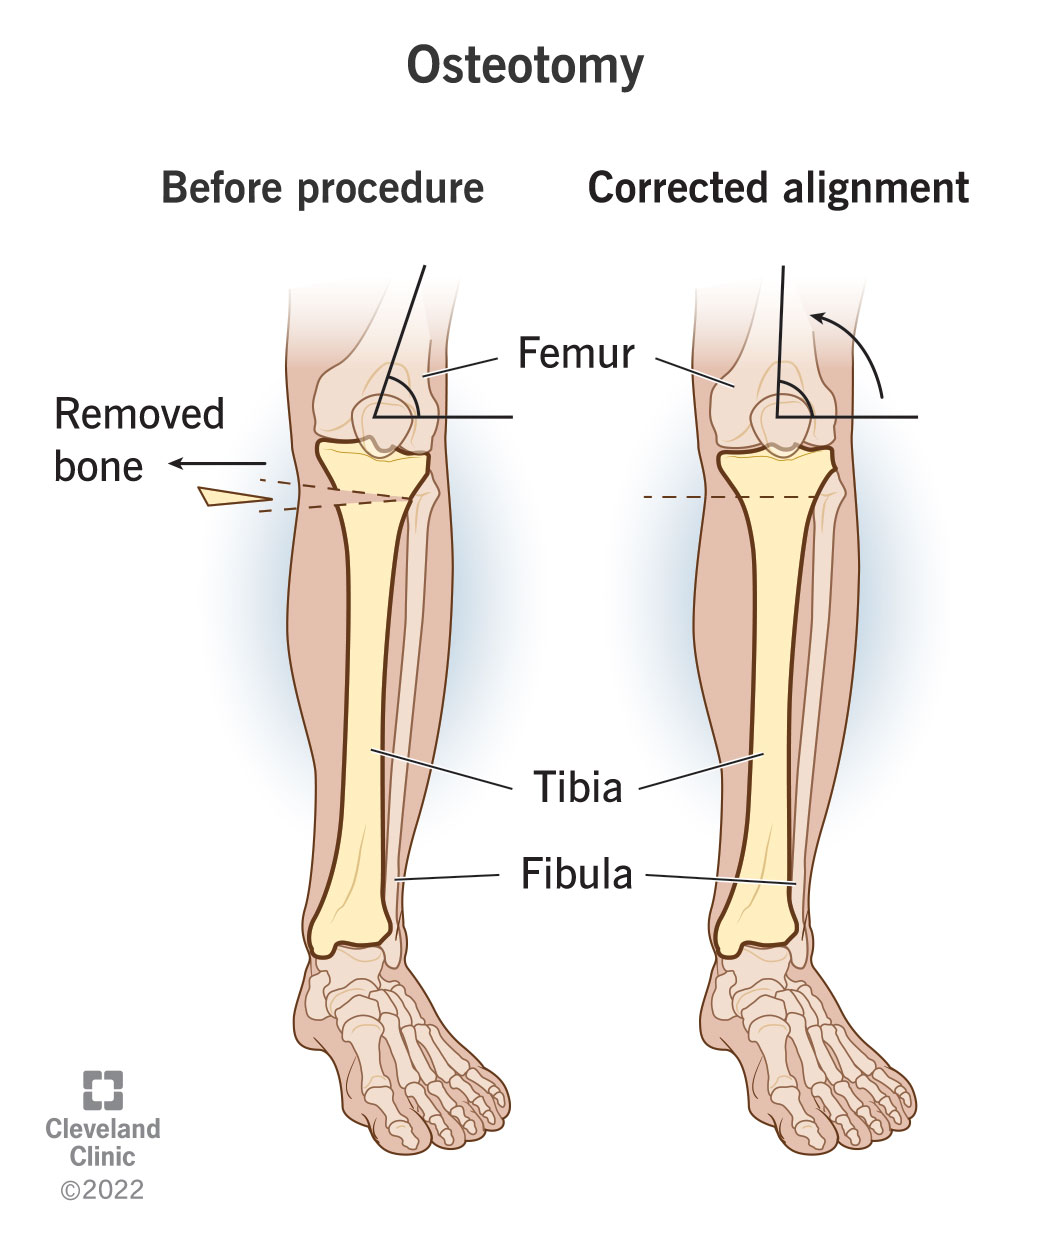 Prima e dopo l'osteotomia per rimodellare o riallineare l'osso.